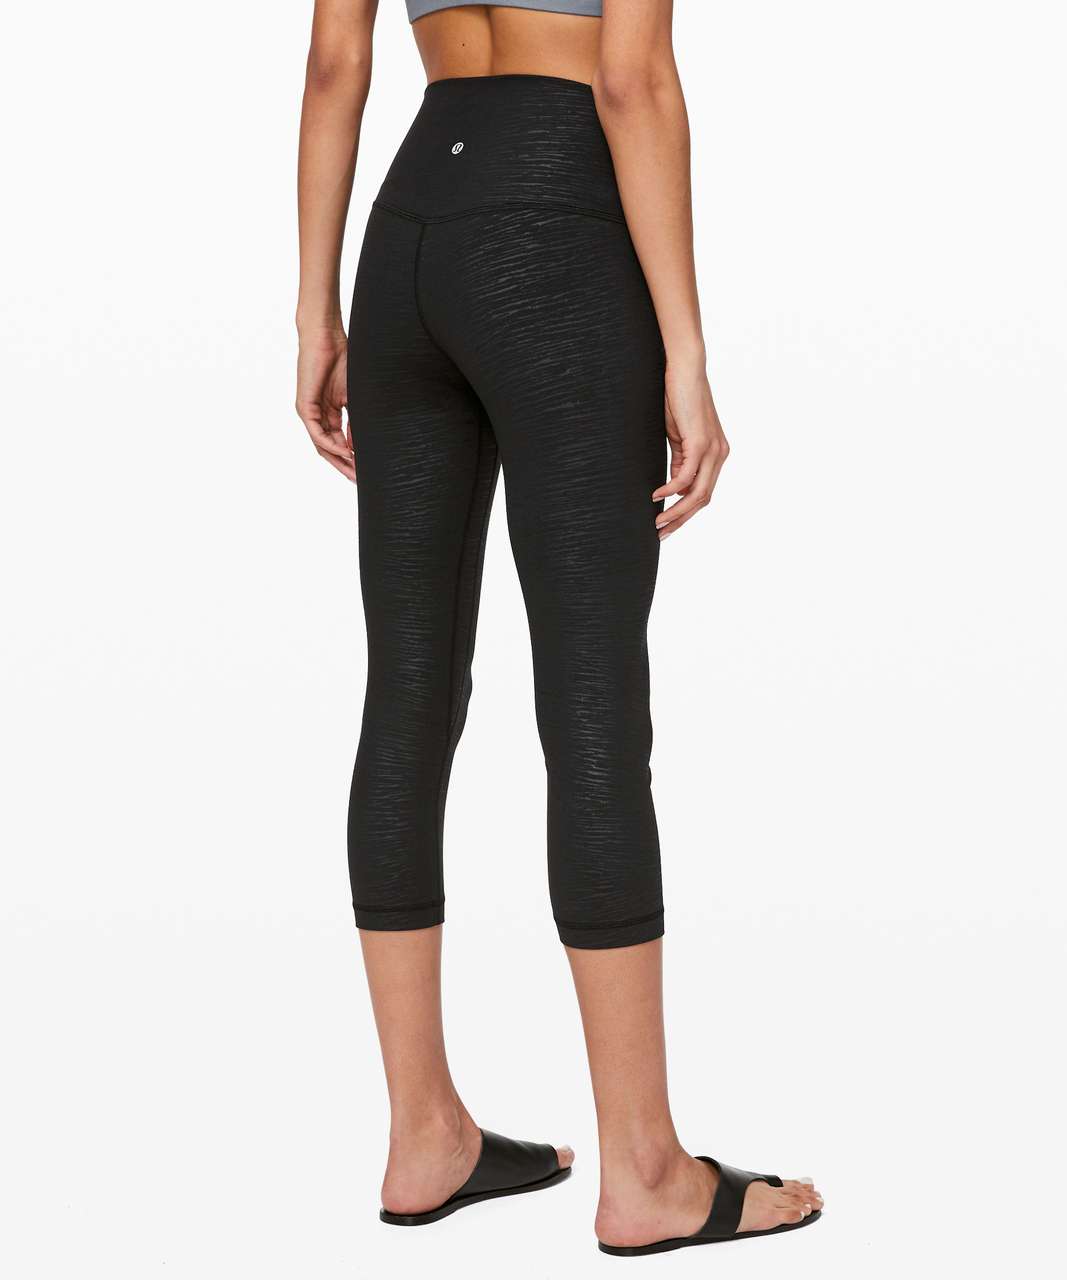 Lululemon Align leggings, size 4, 21”, black